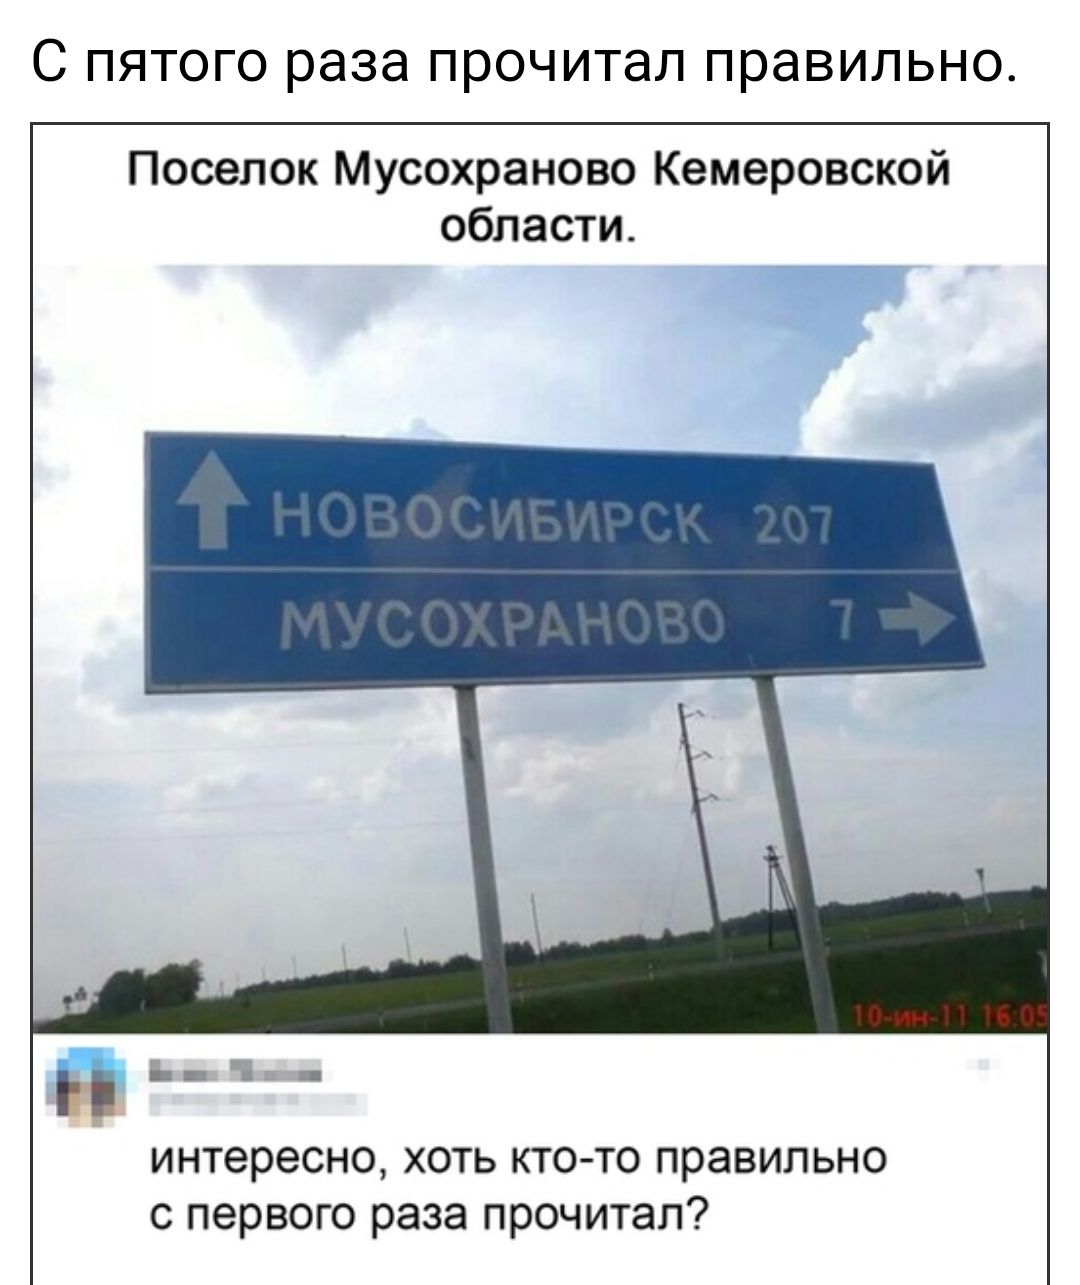 Слово которое нельзя прочитать. Мусохраново. Посёлок Мусохраново. Мусохраново Кемеровская область. Поселок Мусохраново Кемеровская область.